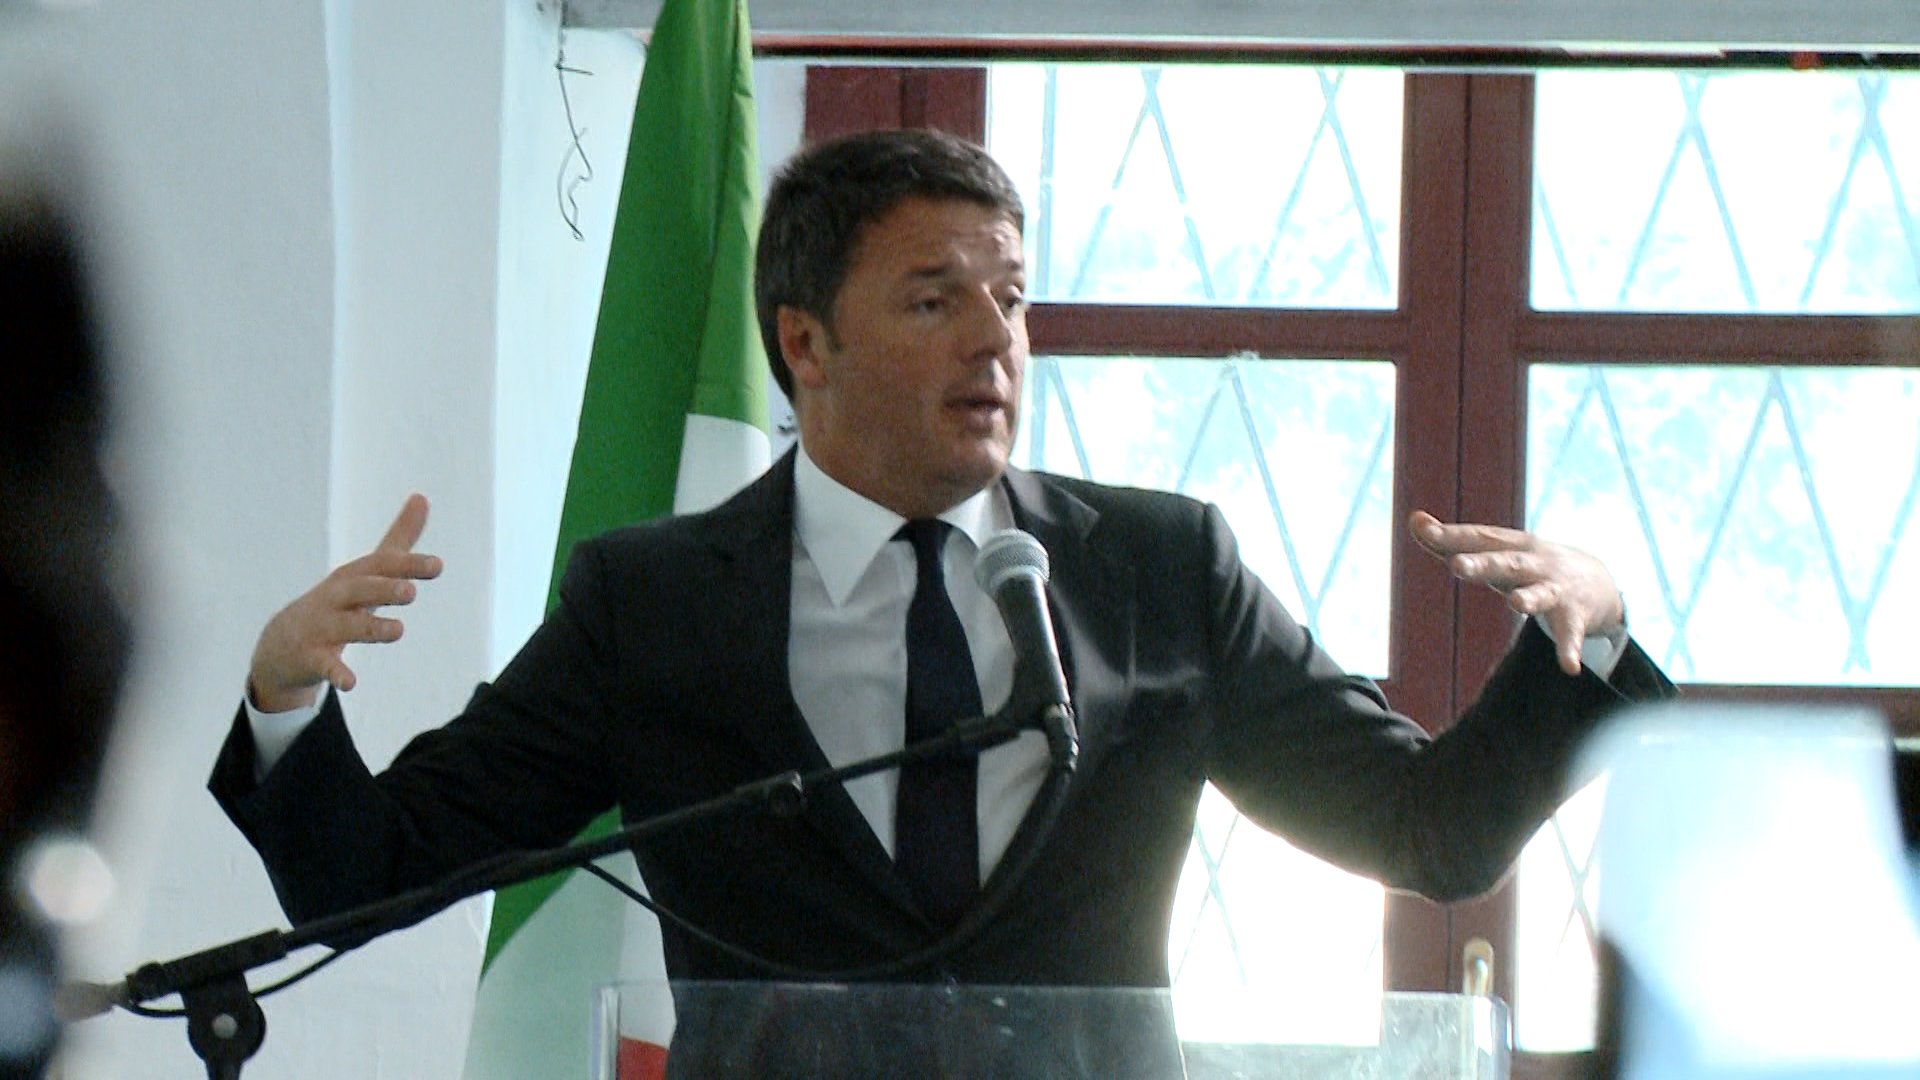 Elezioni segretario nazionale Pd: in provincia vince Renzi con il 63%